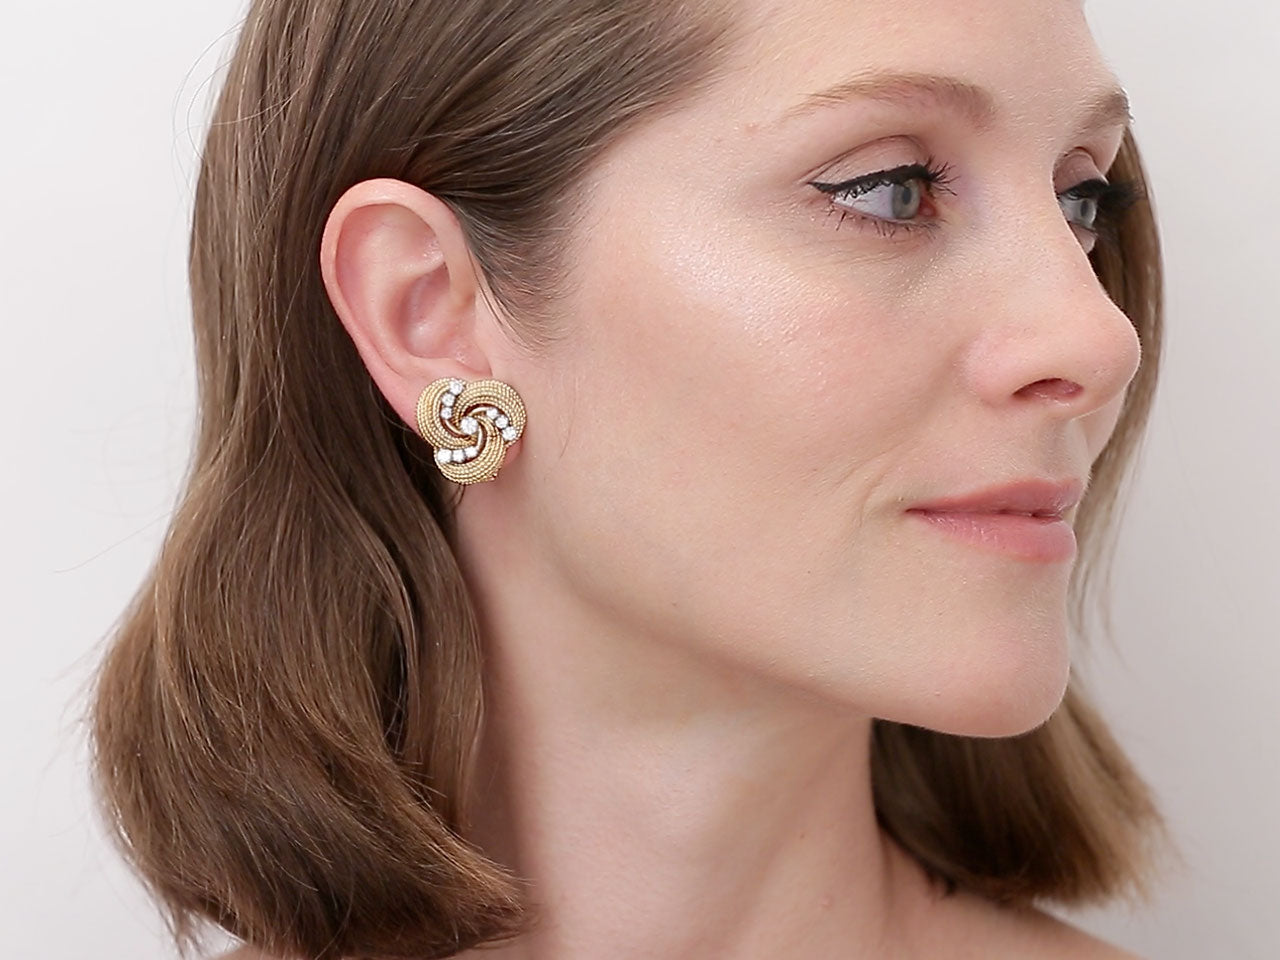 Mid-Century Swirl Diamond Earrings in 18K Gold